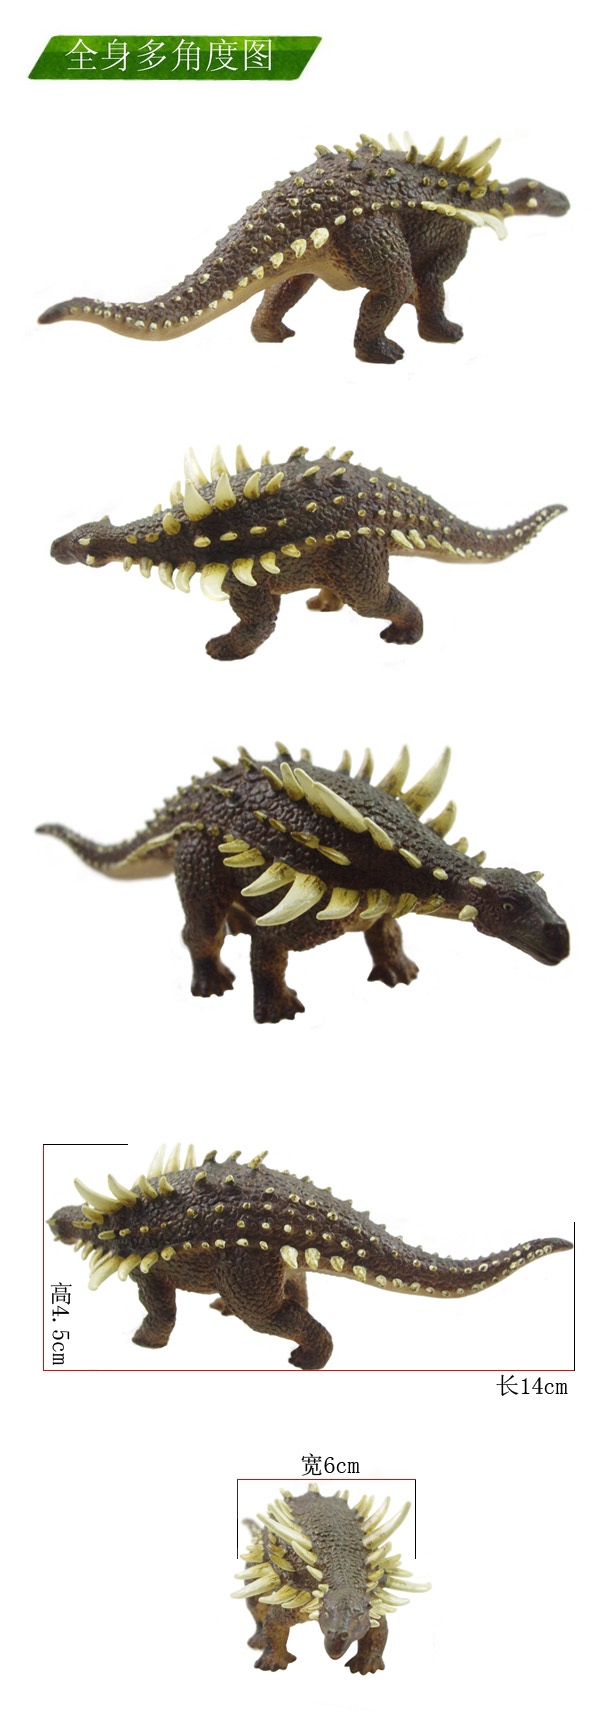 恐龙,背上有刺的恐龙厉害还是没刺的厉害…… 相对来说,背上没有刺